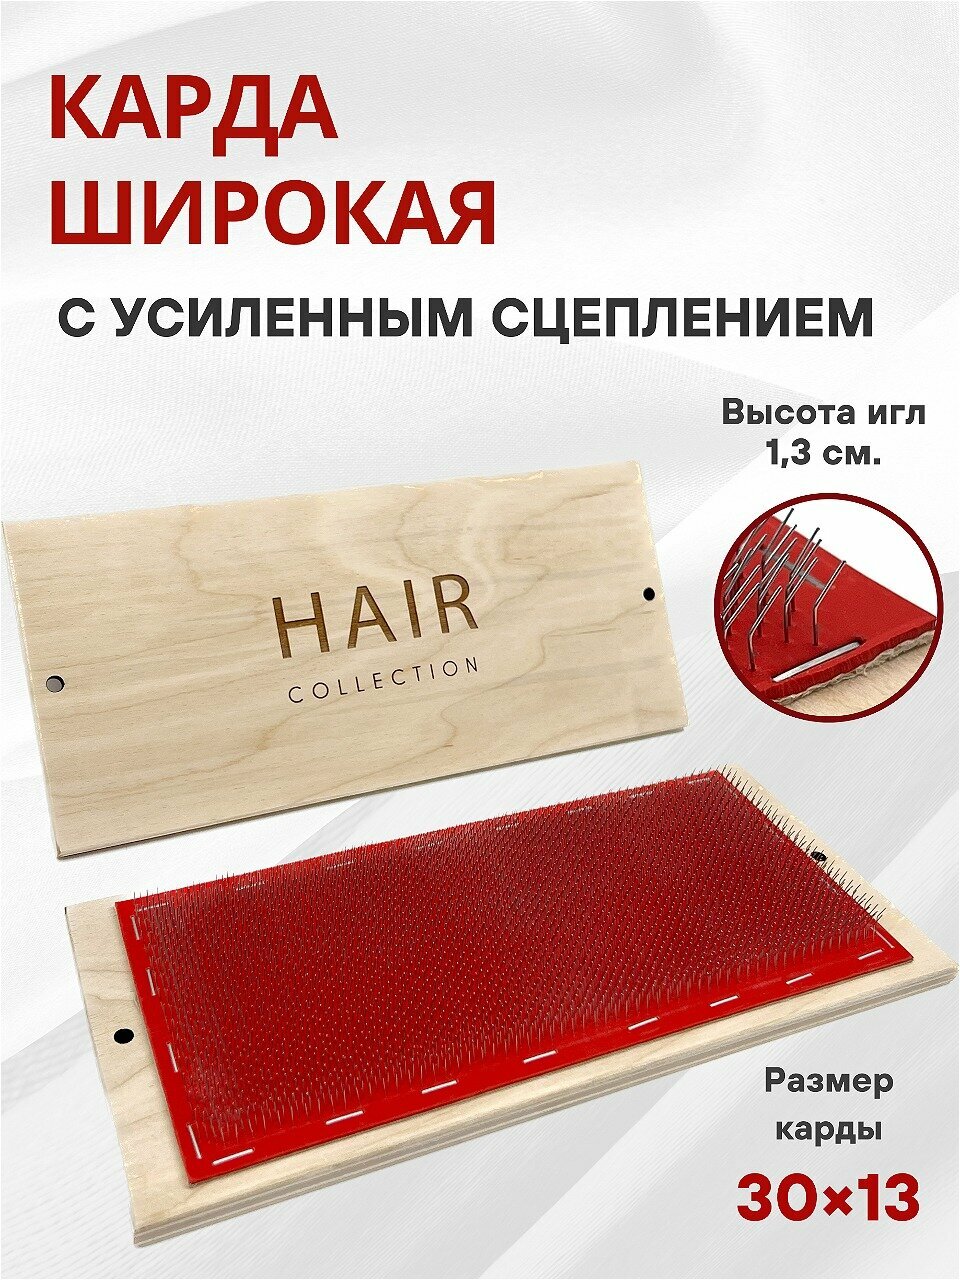 Карда с усиленным сцеплением для капсуляции волос при наращивании на твердой основе большая 30*13 см